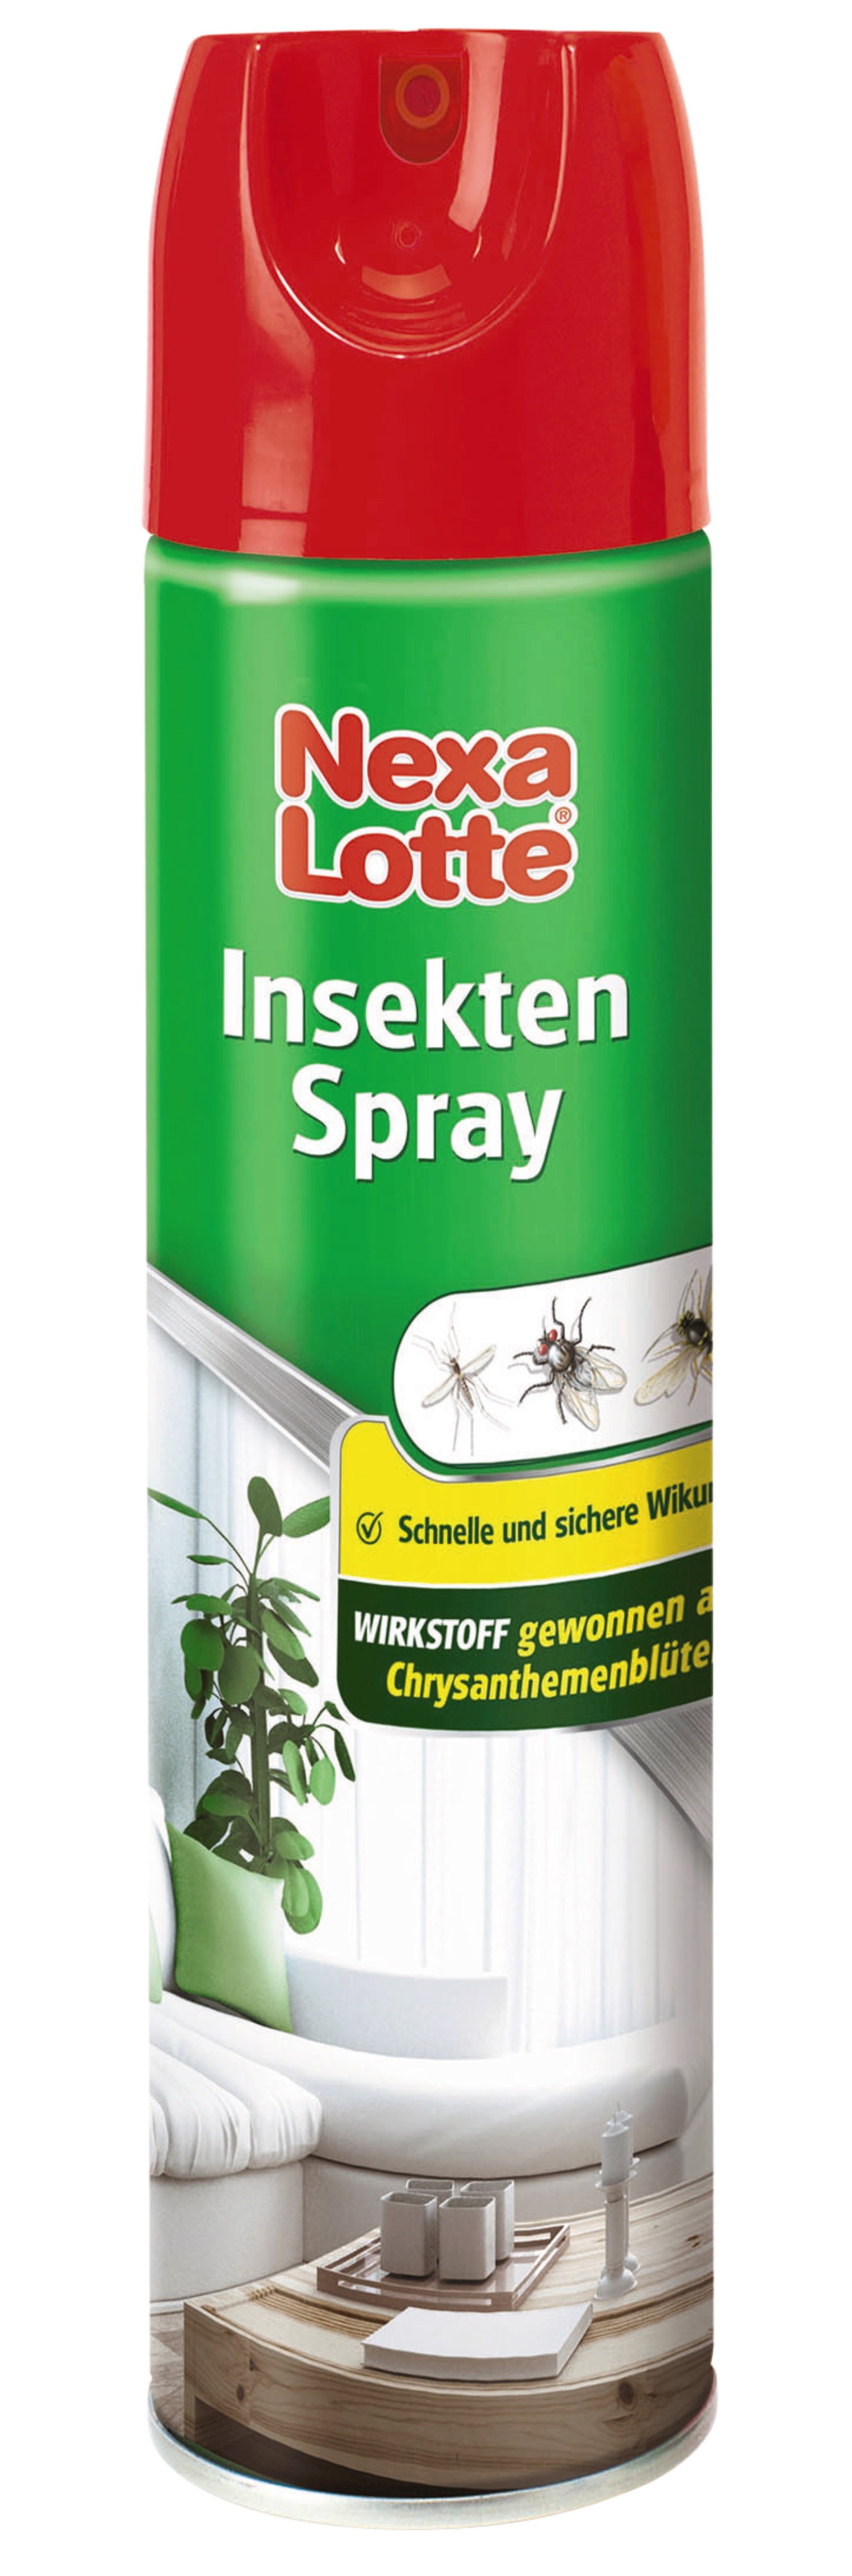 Nexa Lotte® Insekten Spray 400 ml